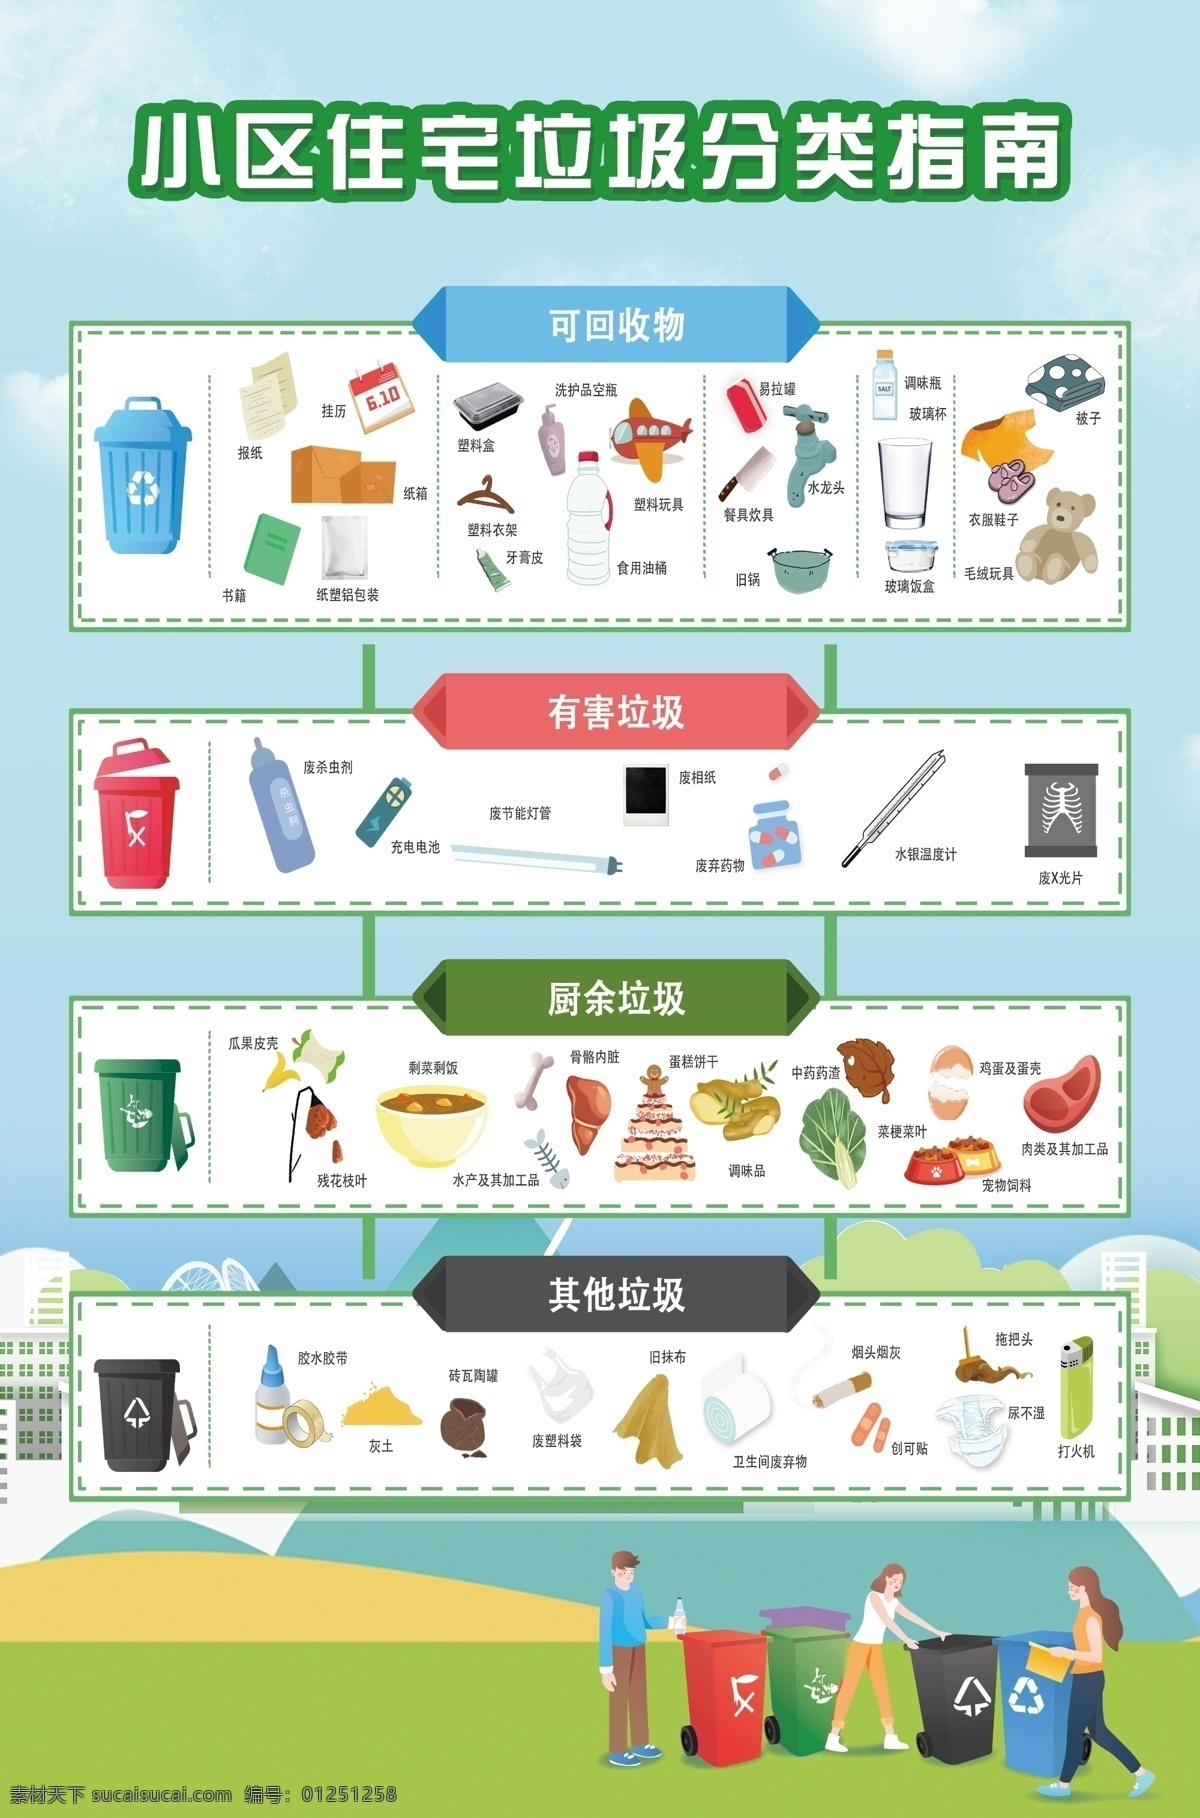 垃圾分类展板 垃圾分类 南京垃圾分类 南京城管局 垃圾分类详细 其他分类 可回收垃圾 文化艺术